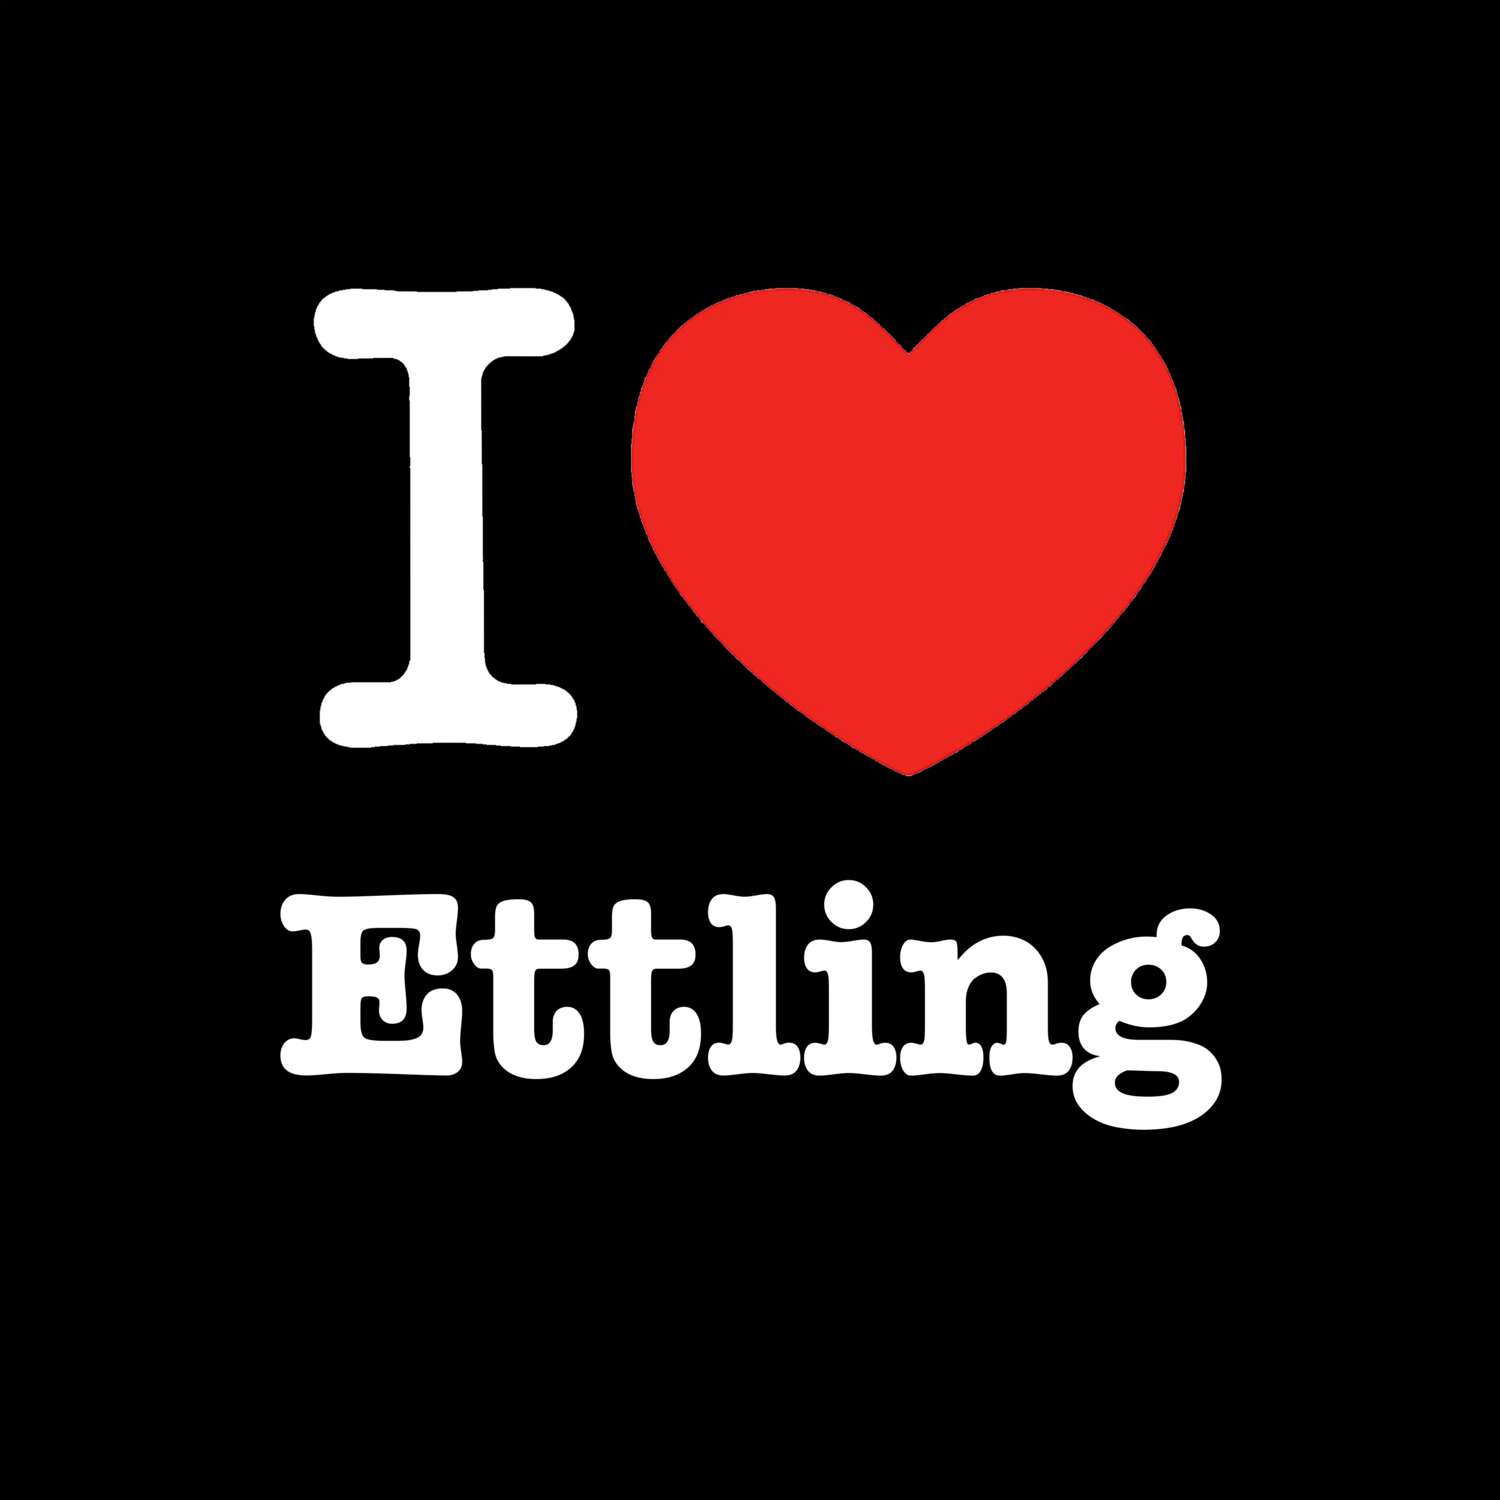 Ettling T-Shirt »I love«